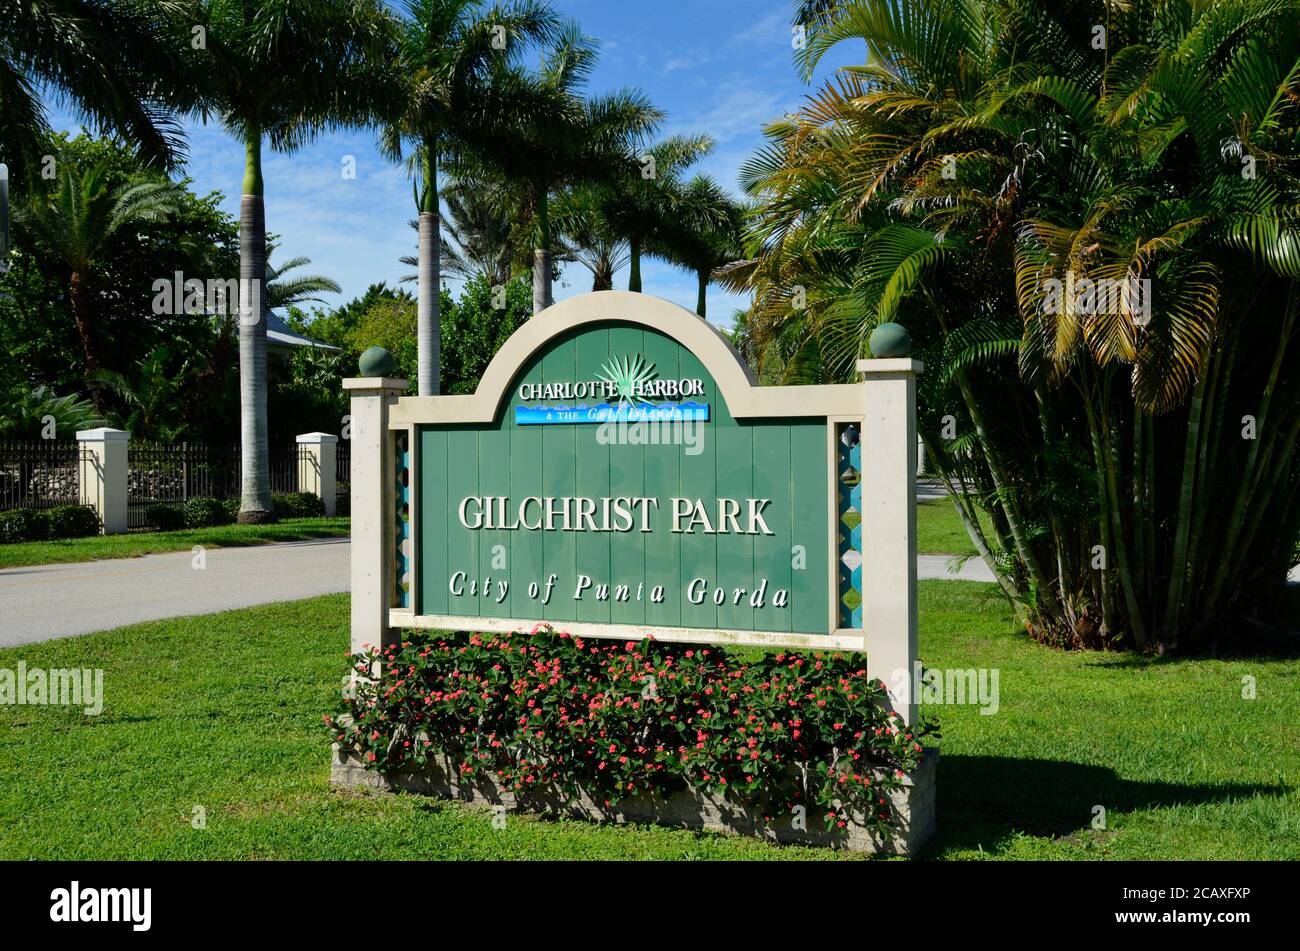 Tout nouveau terrain de jeu à Gilchrist Park, Punta Gorda, FL USA Banque D'Images